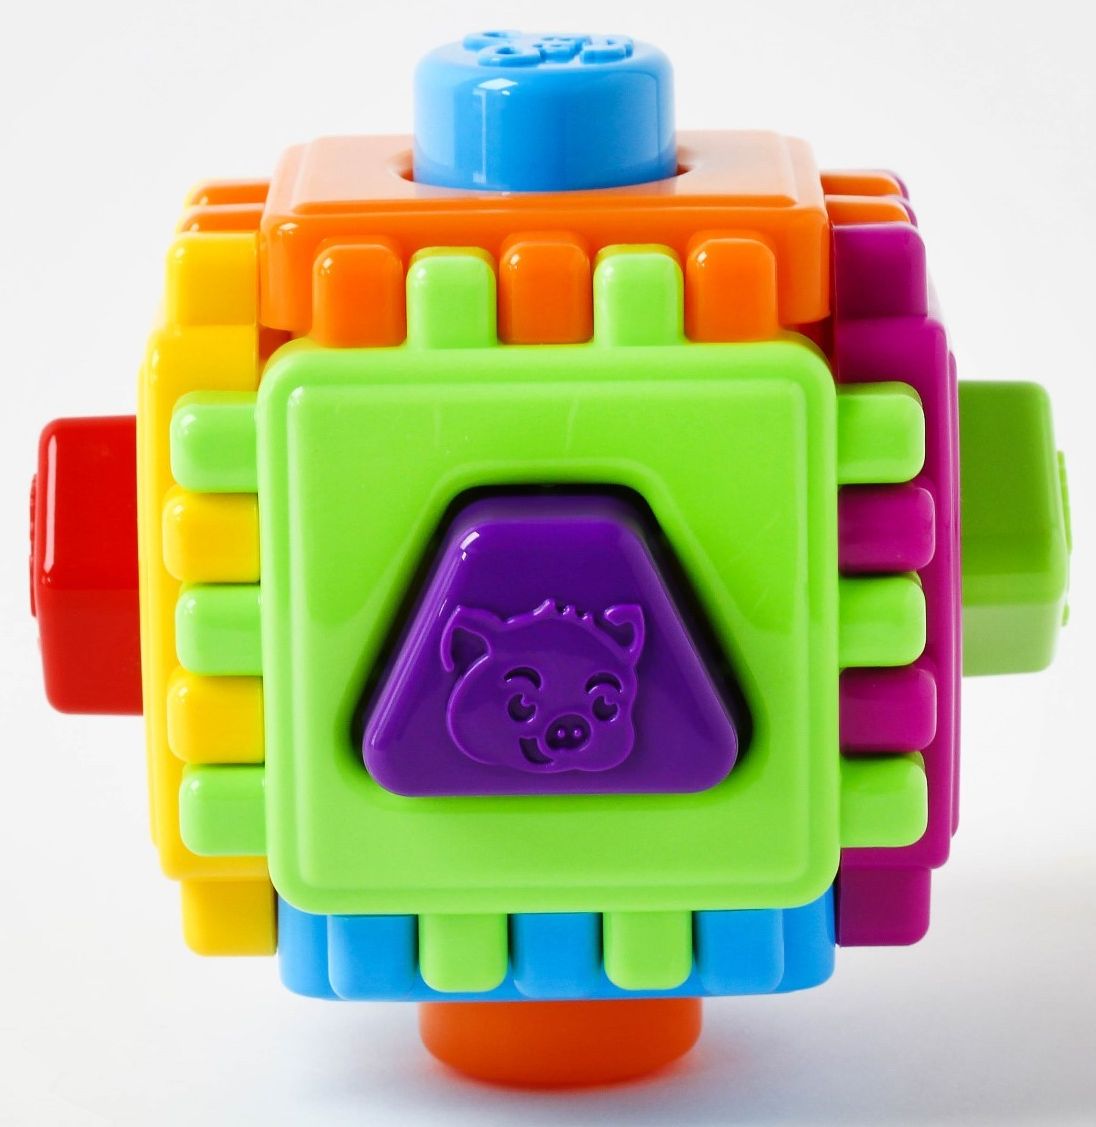 Куб сортер. Логический куб Геометрик м6372. Развивающая игрушка куб сортер. Кубик сортер пластмассовый. Логический куб (большой).